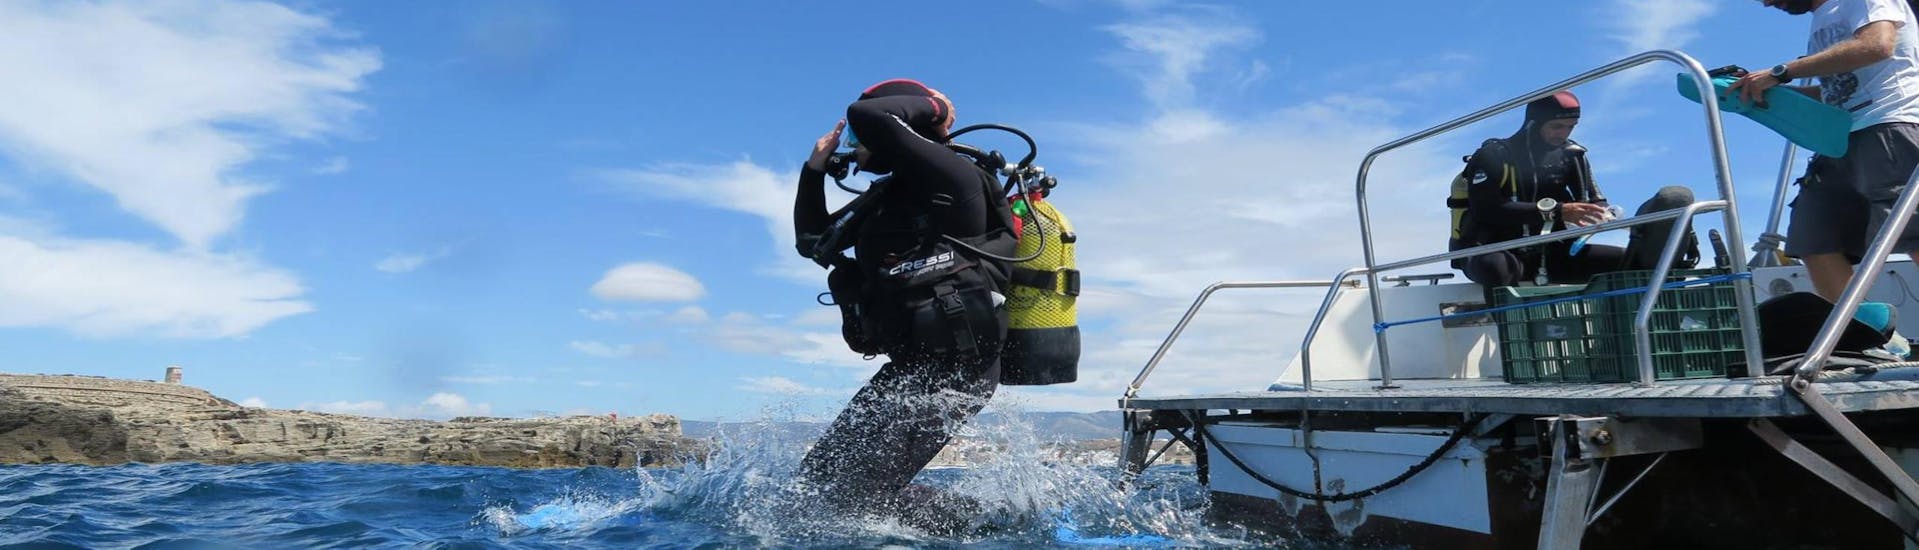 DELUXE Open Water Diver Tauchkurs in Tarifa für Anfänger.